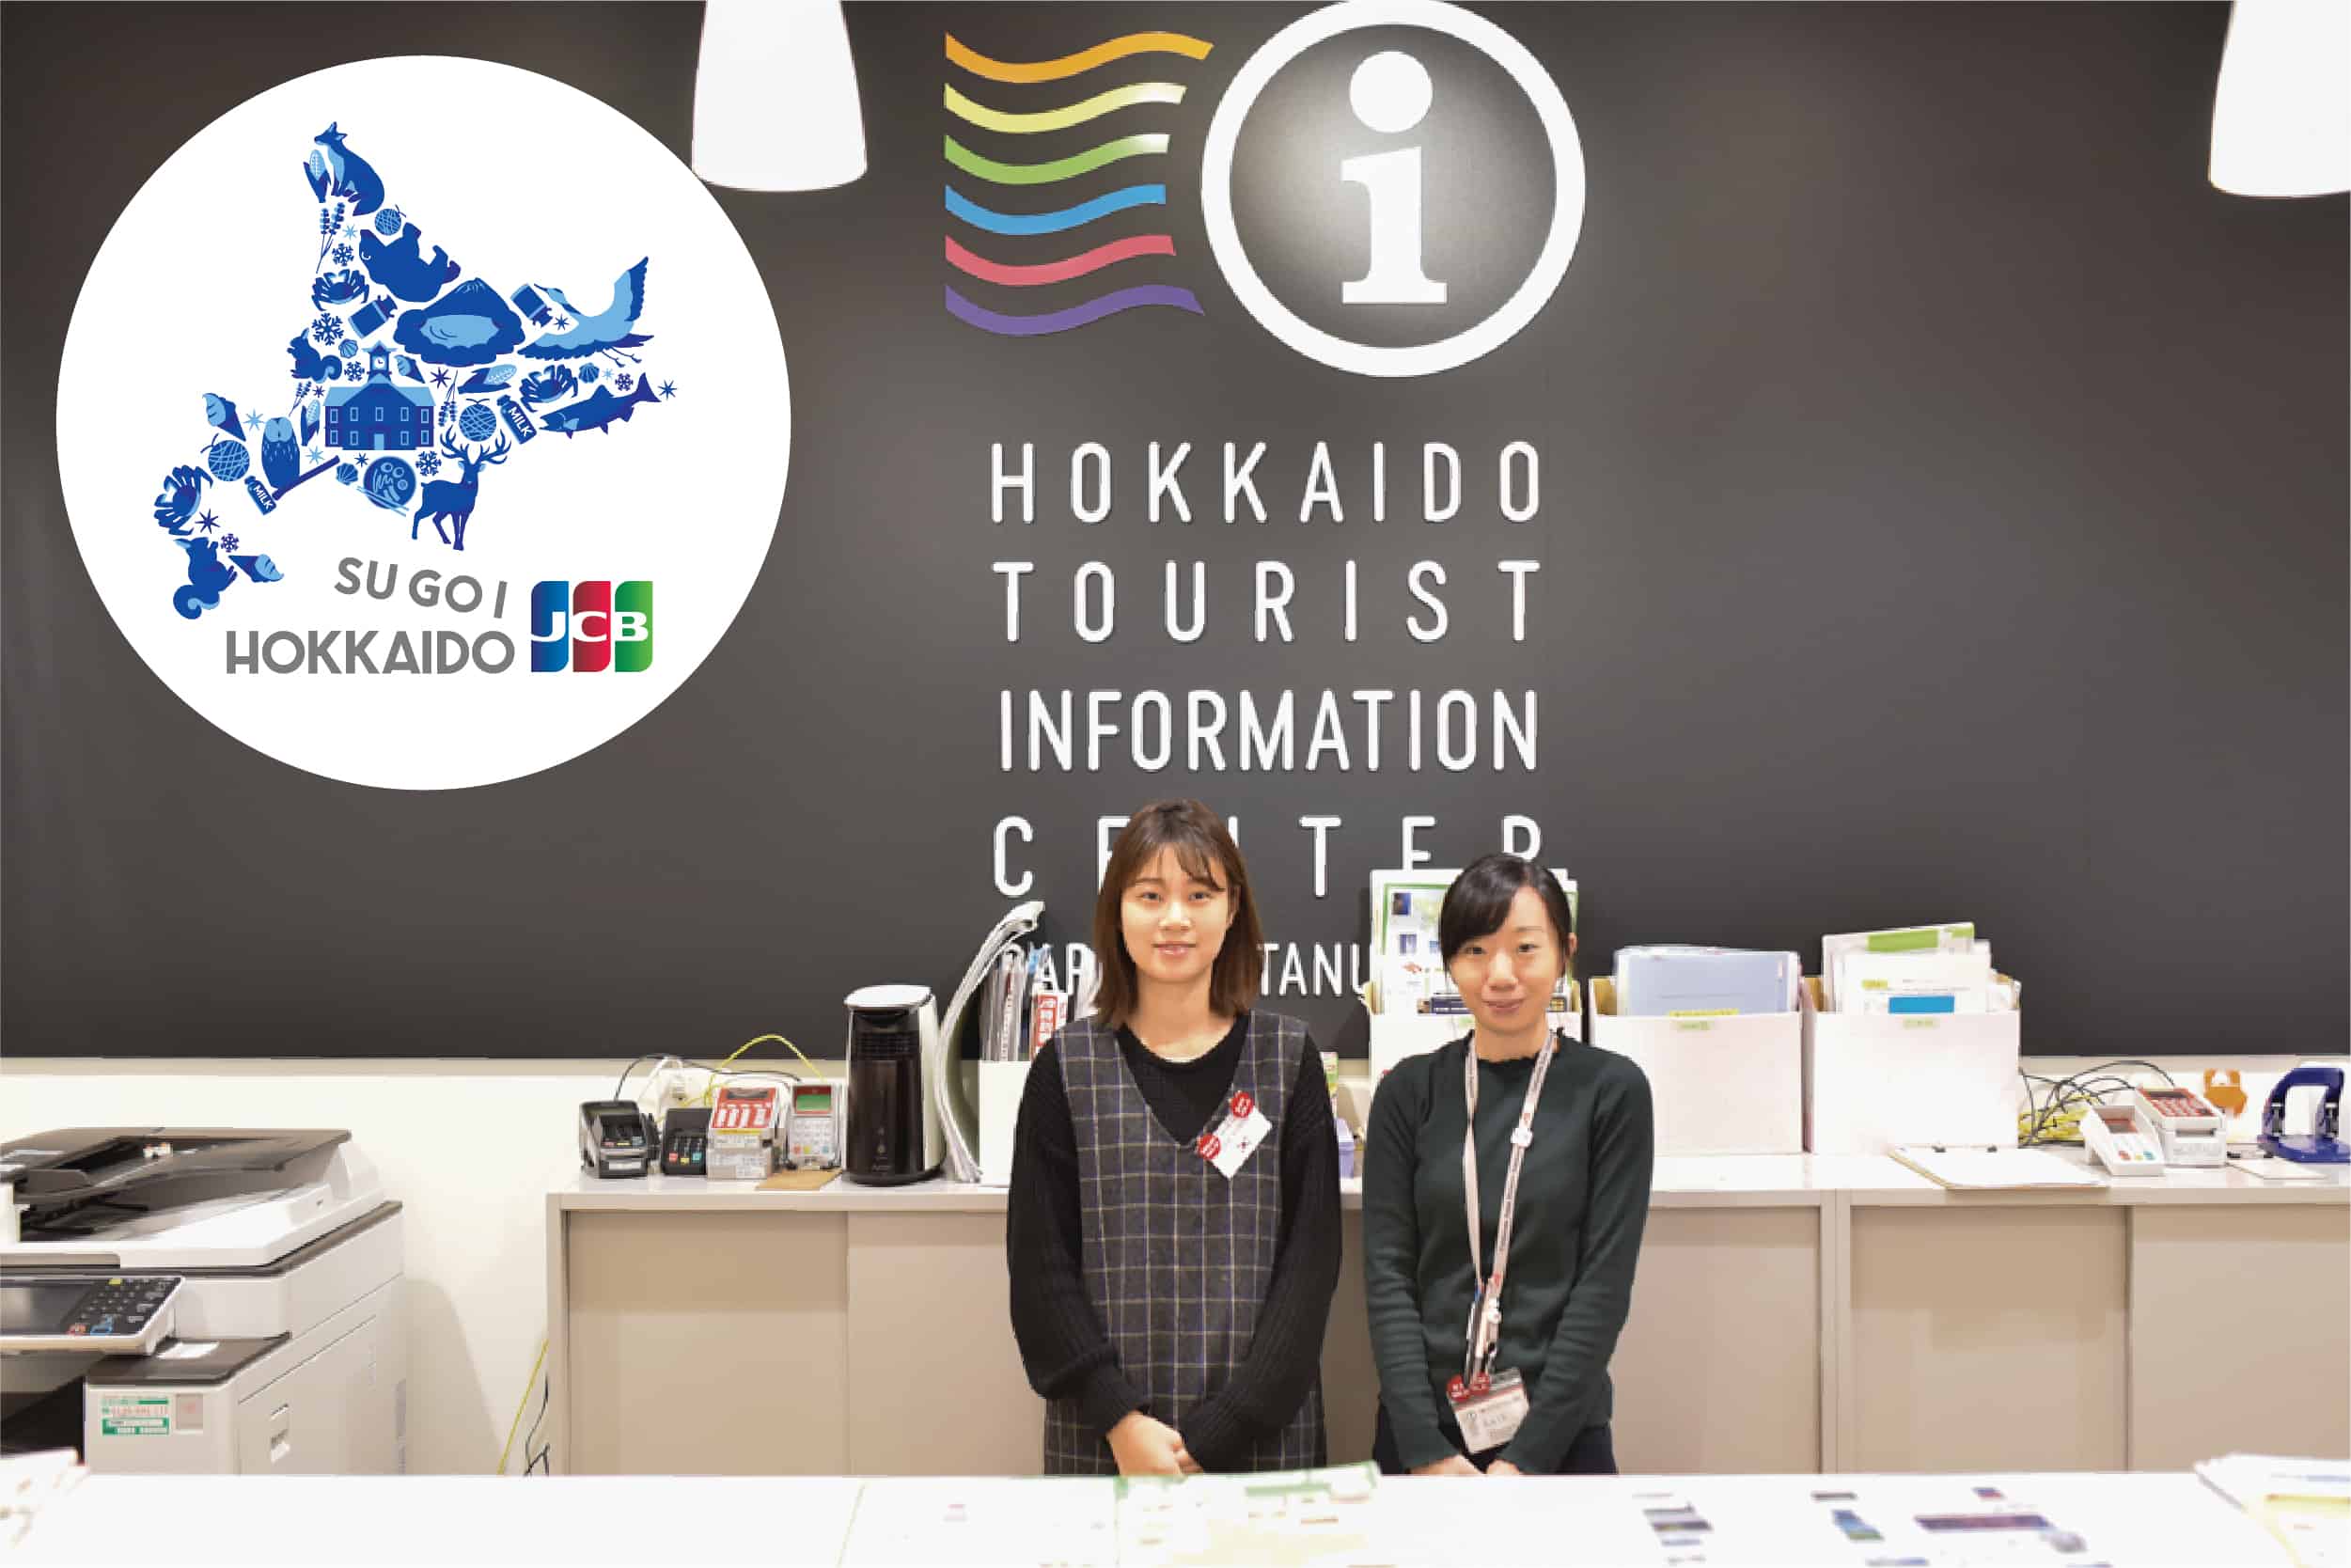 Hokkaido Tourist Information Center at Tanuki-Koji